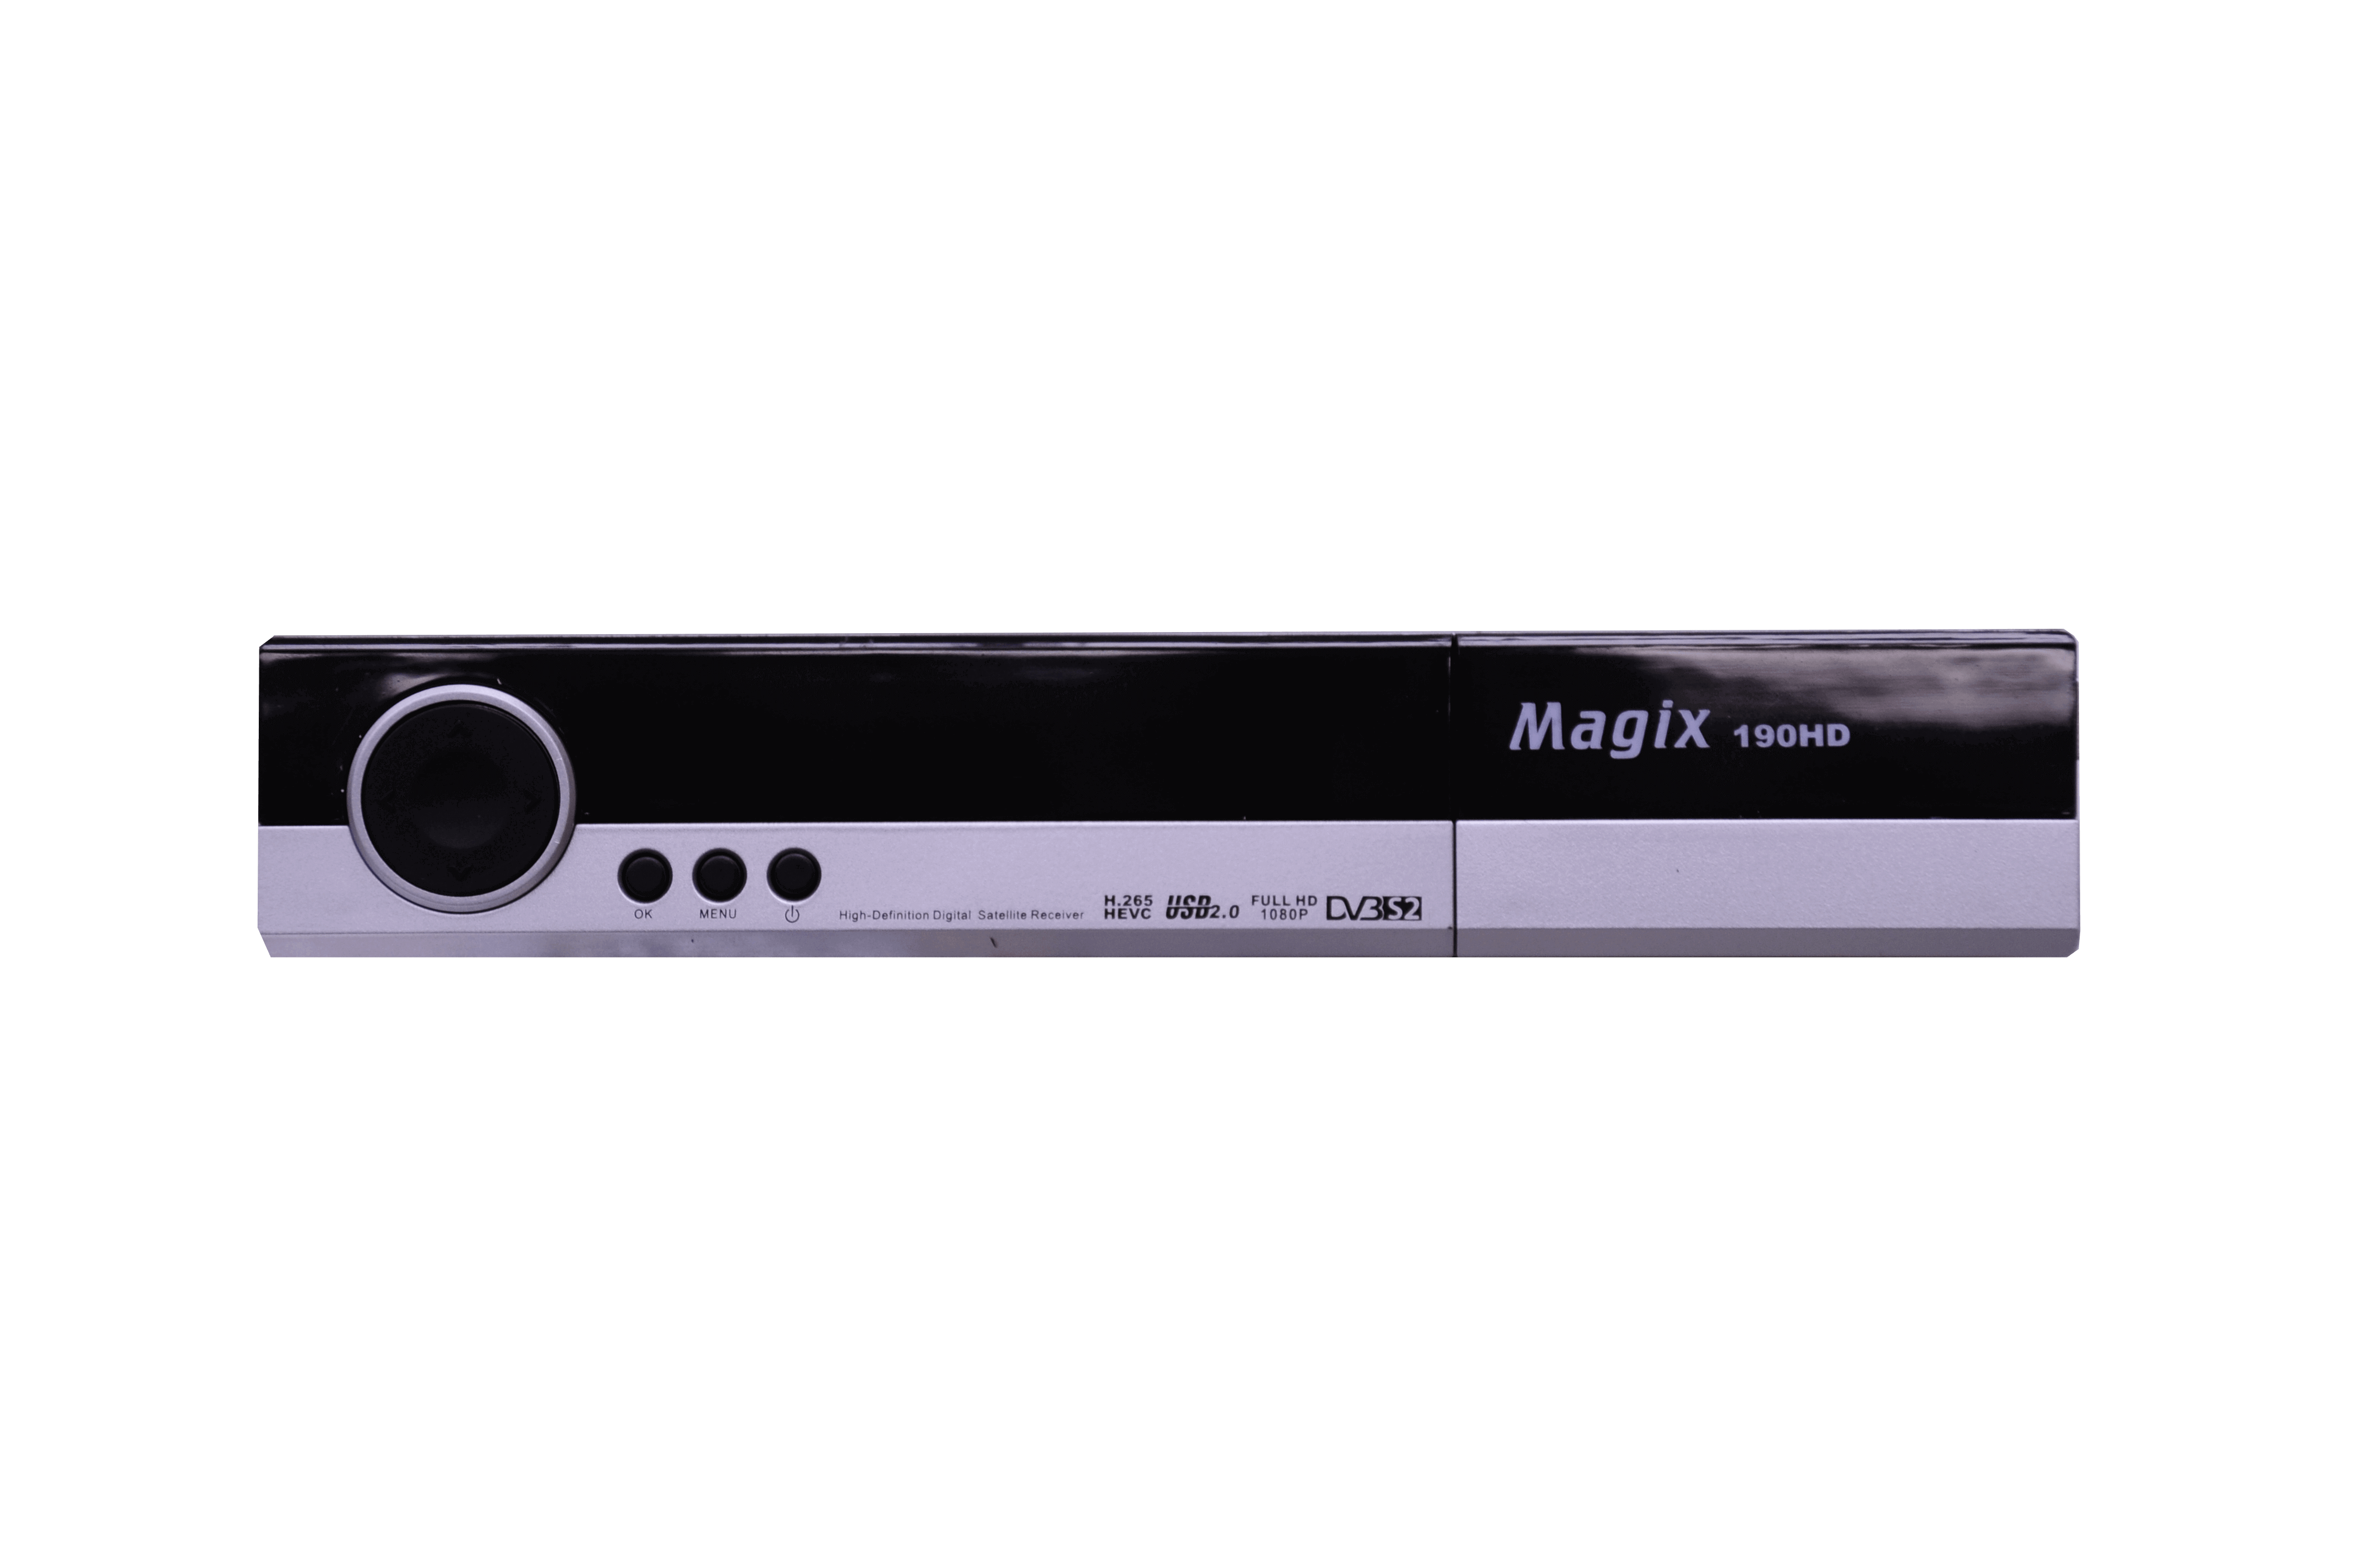 Magix DVBS2X-190HD